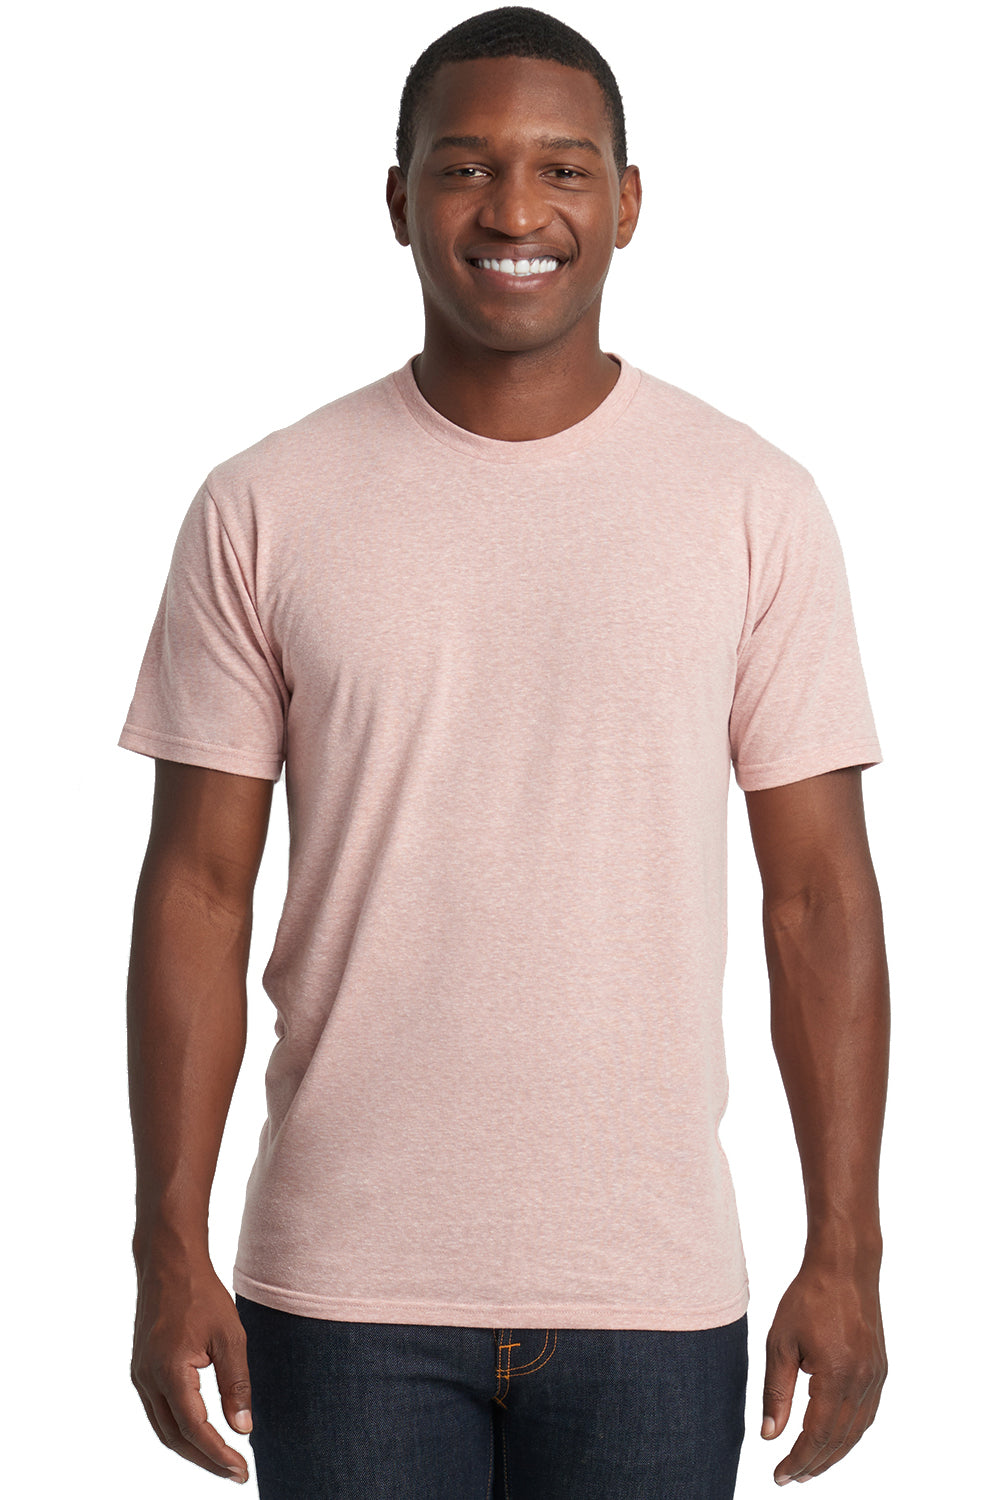 Next Level 6010 Jersey Short Sleeve Crewneck T-Shirt Desert Pink Front